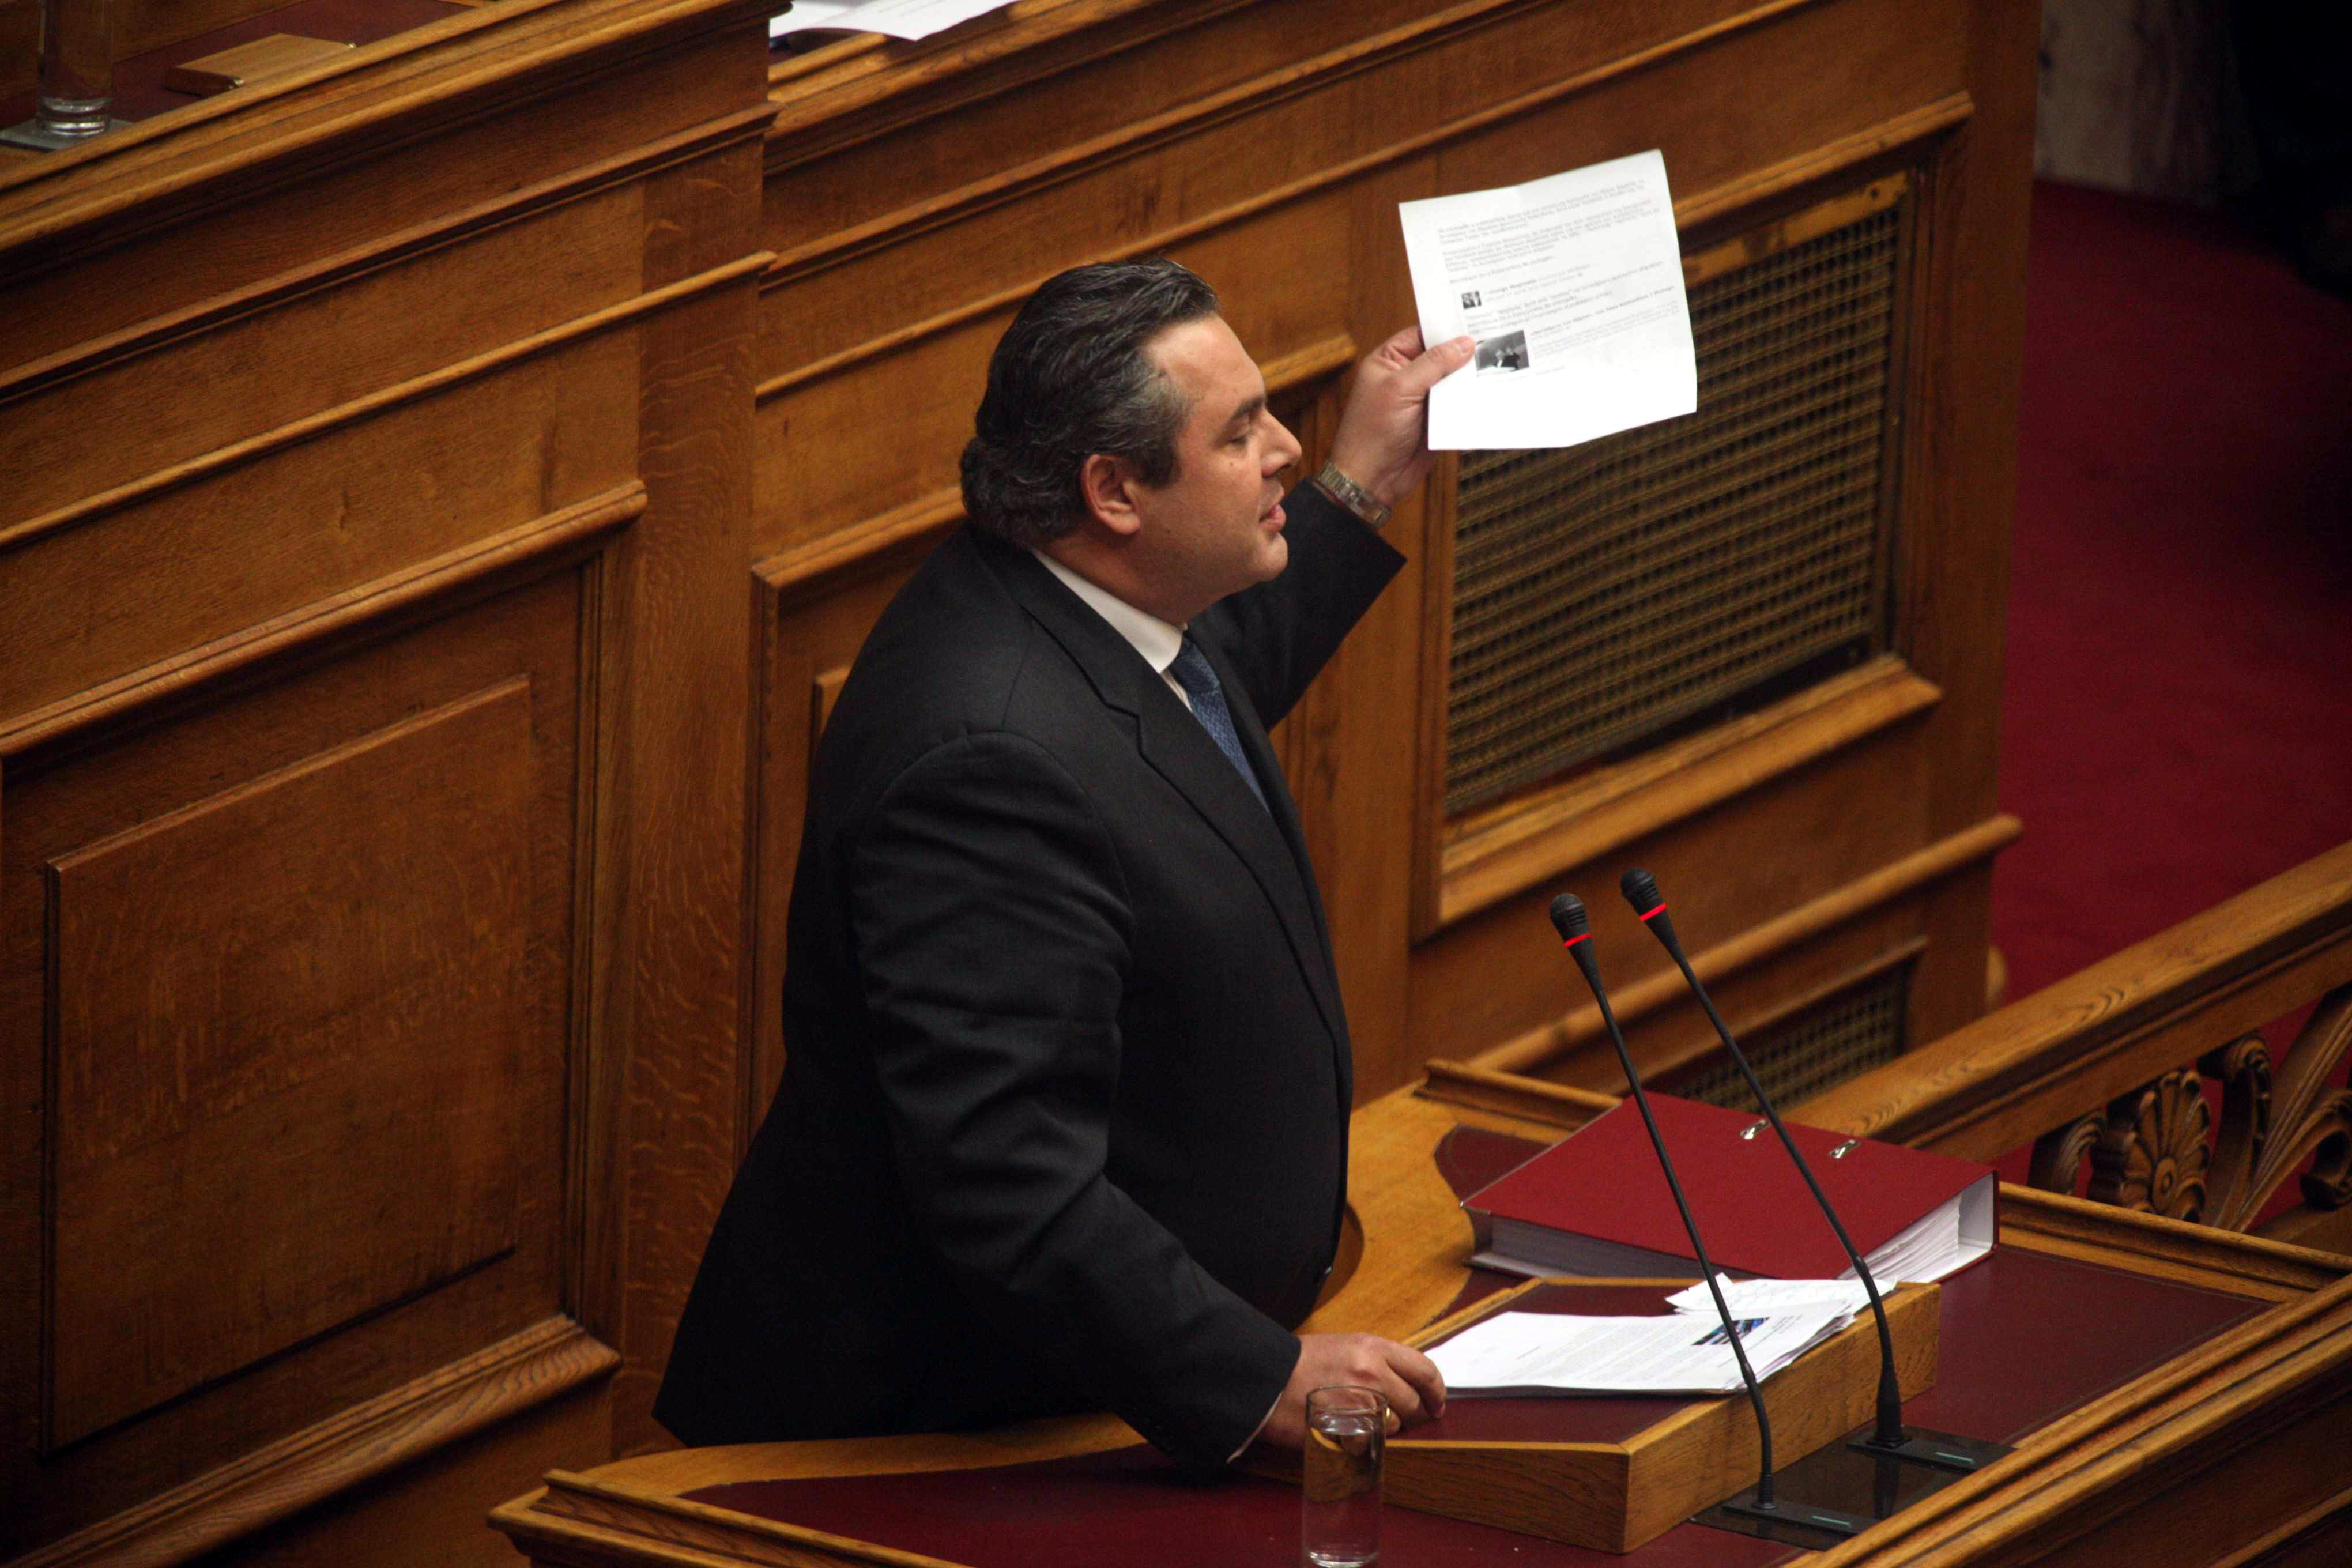 Άνοιγμα του φακέλου της Κύπρου και δημοσιοποίηση των αρχείων της Βουλής, ζητάει ο Π. Καμμένος